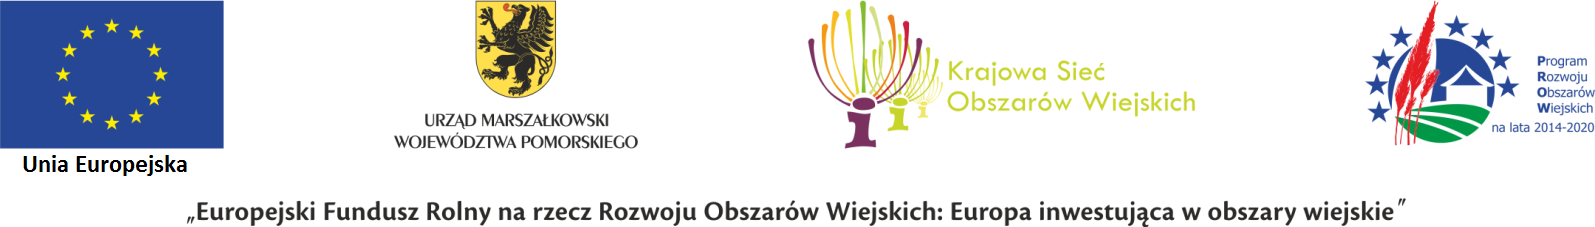 UE, UMWP, Krajowa Sieć Obszarów Wiejskich, PROW - logotypy